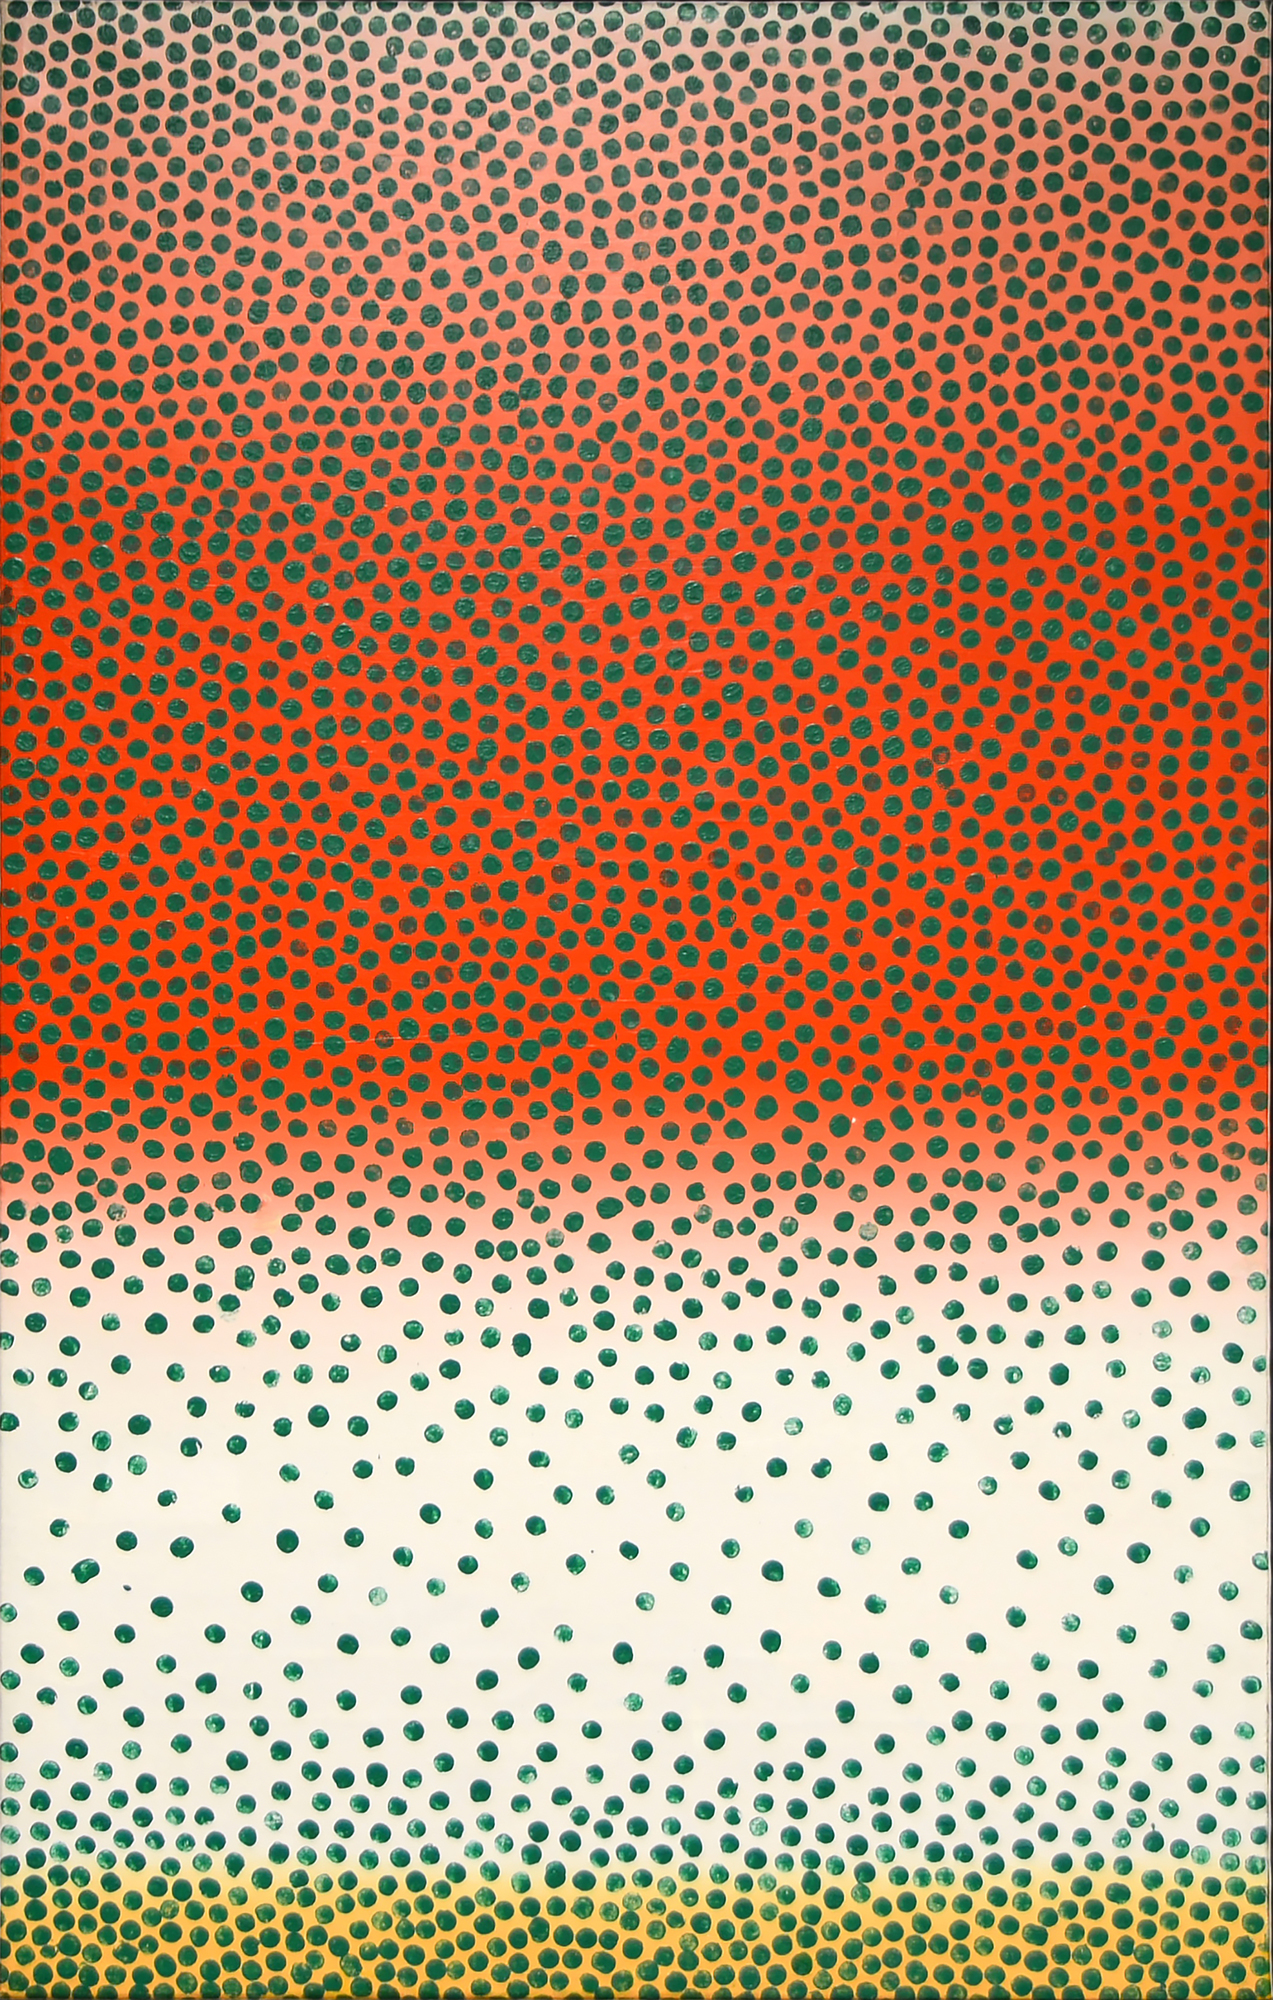 WOJCIECH FANGOR - Green Points - óleo sobre tela - 52 7/8 x 33 1/2 in.